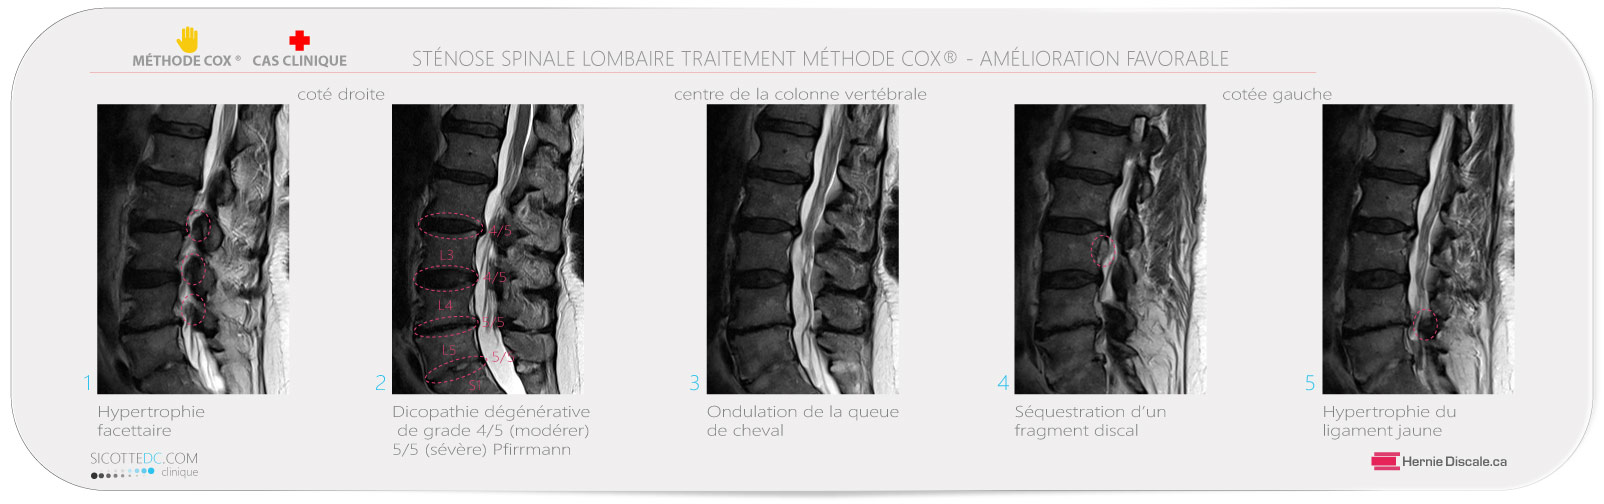 Sténose spinale lombaire femme de 72 ans. Resultats des traitement méthode Cox.